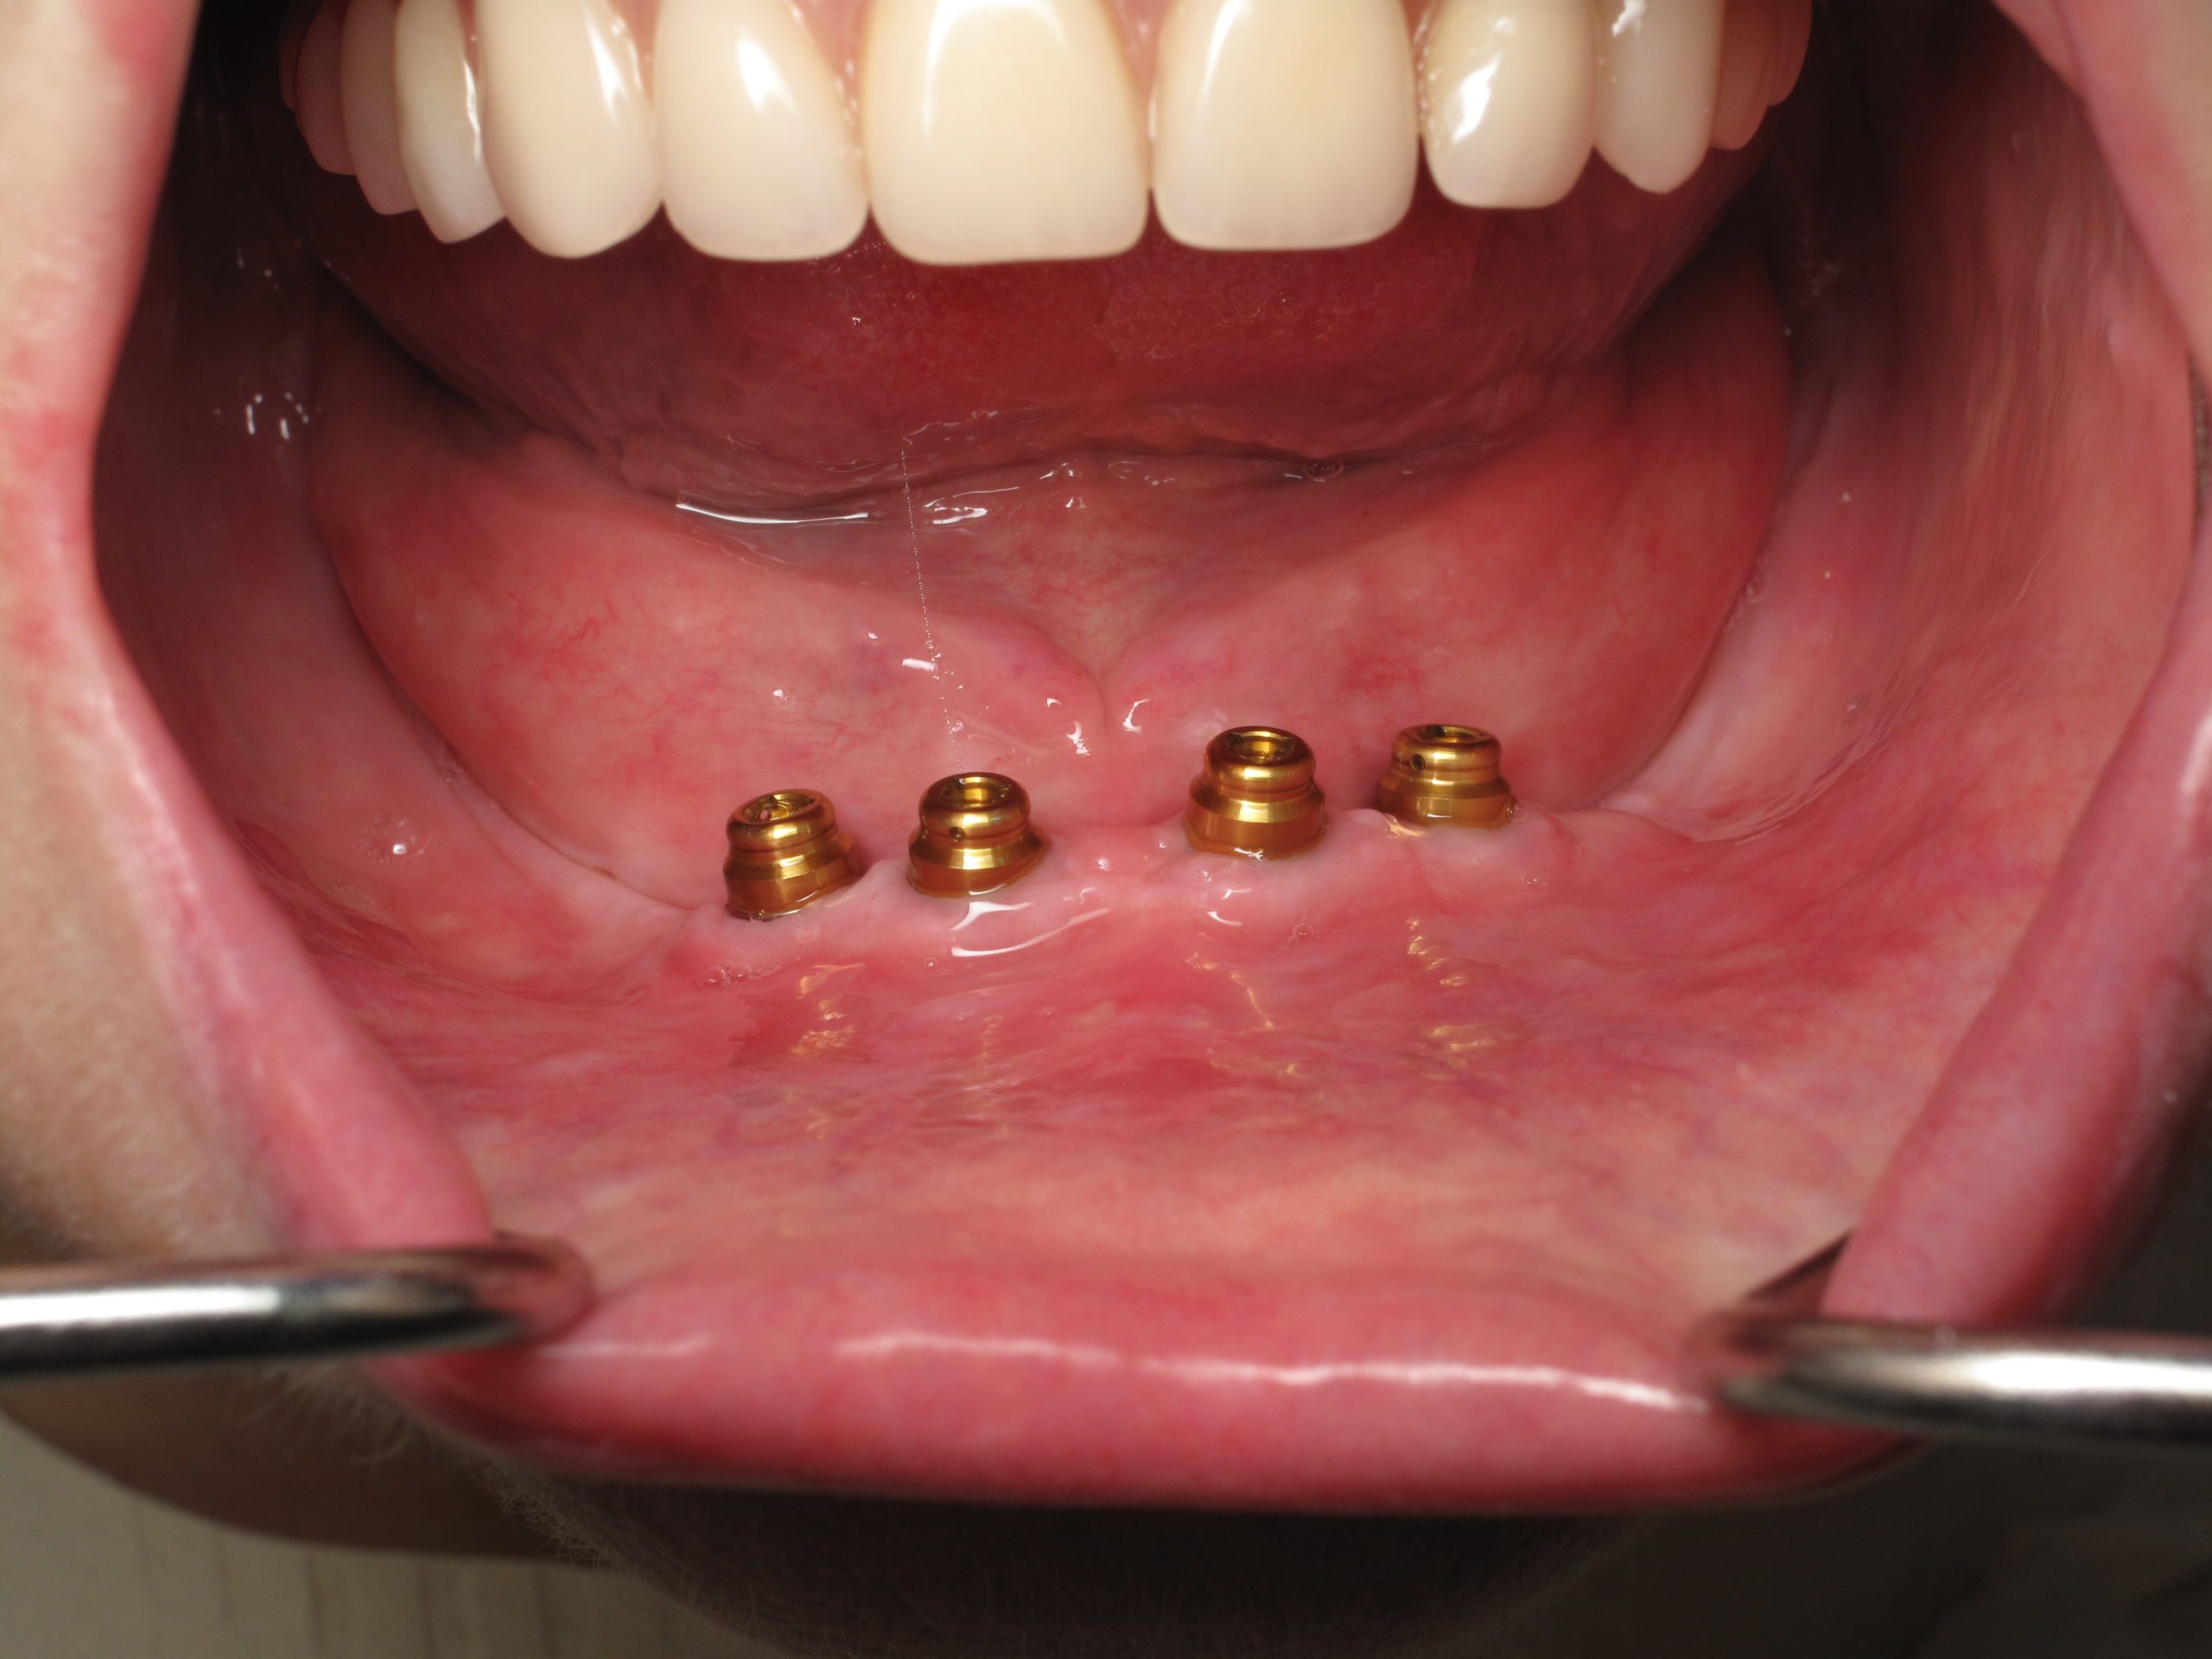 denture implant